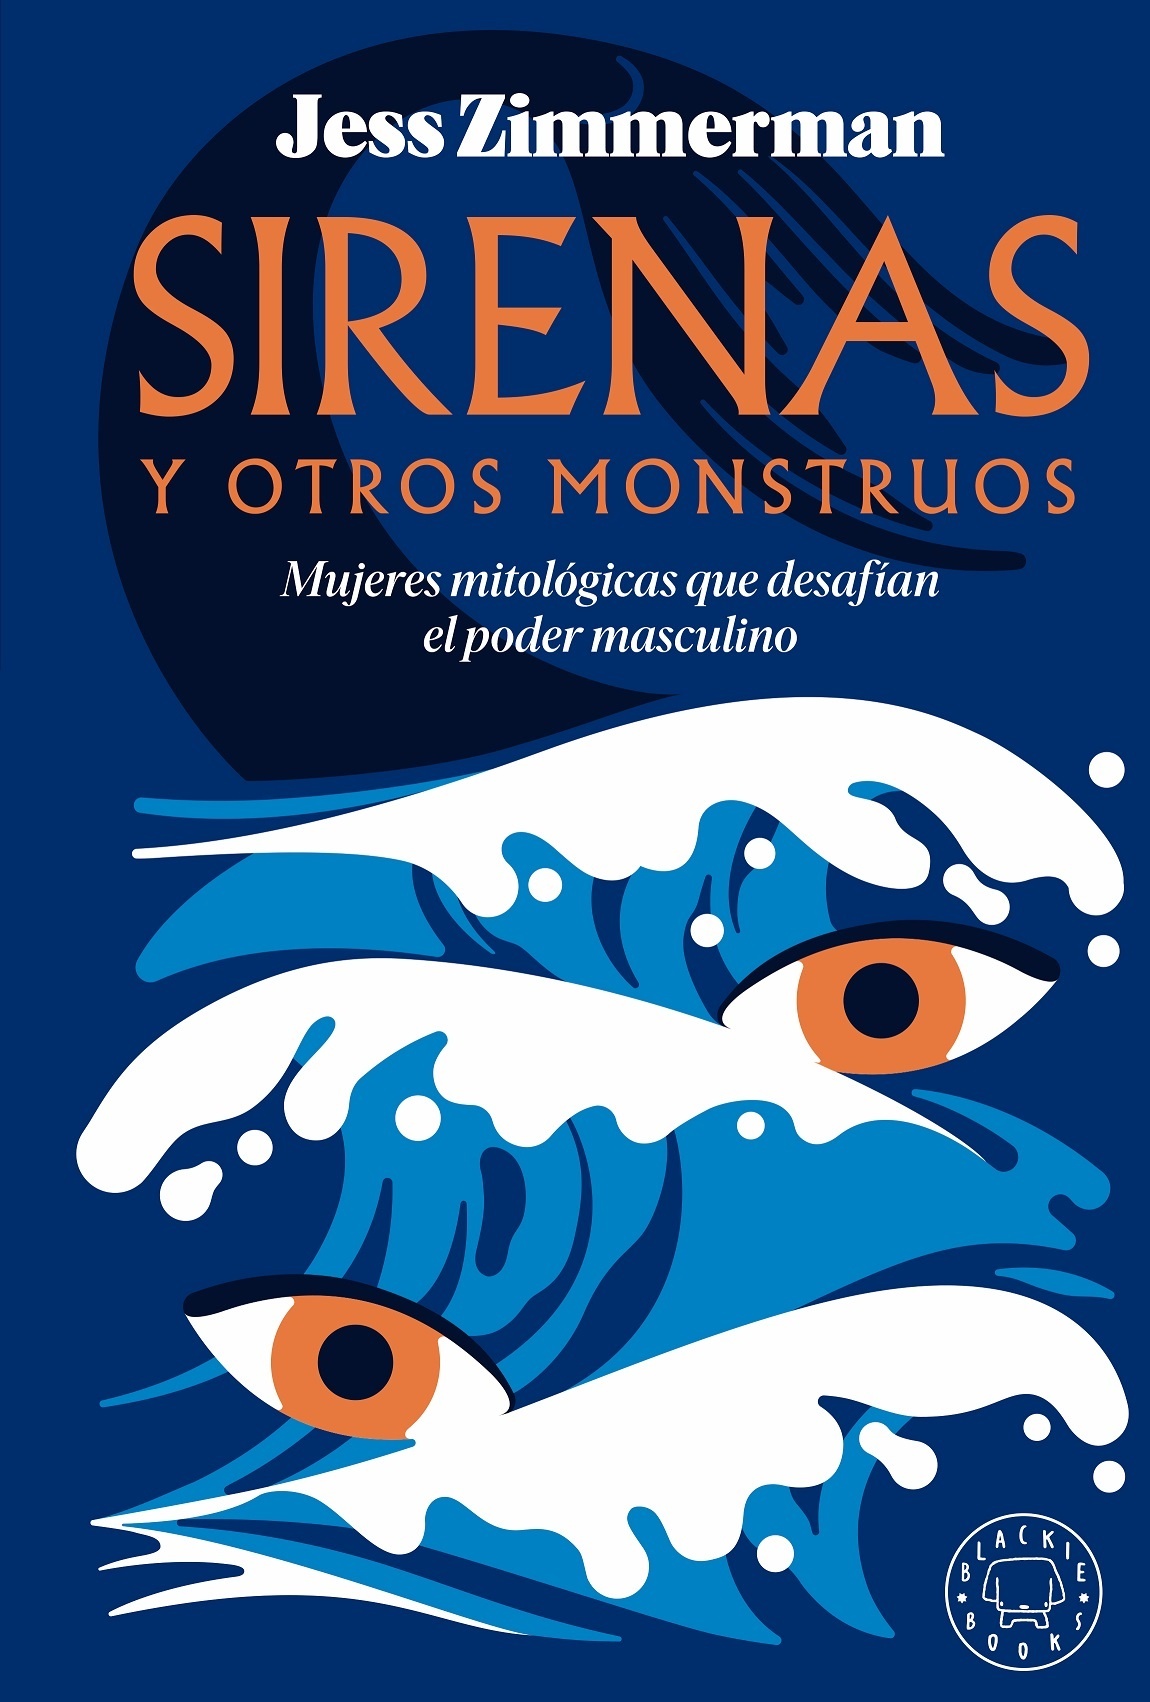 Sirenas y otros monstruos "Mujeres mitológicas que desafían el poder masculino"